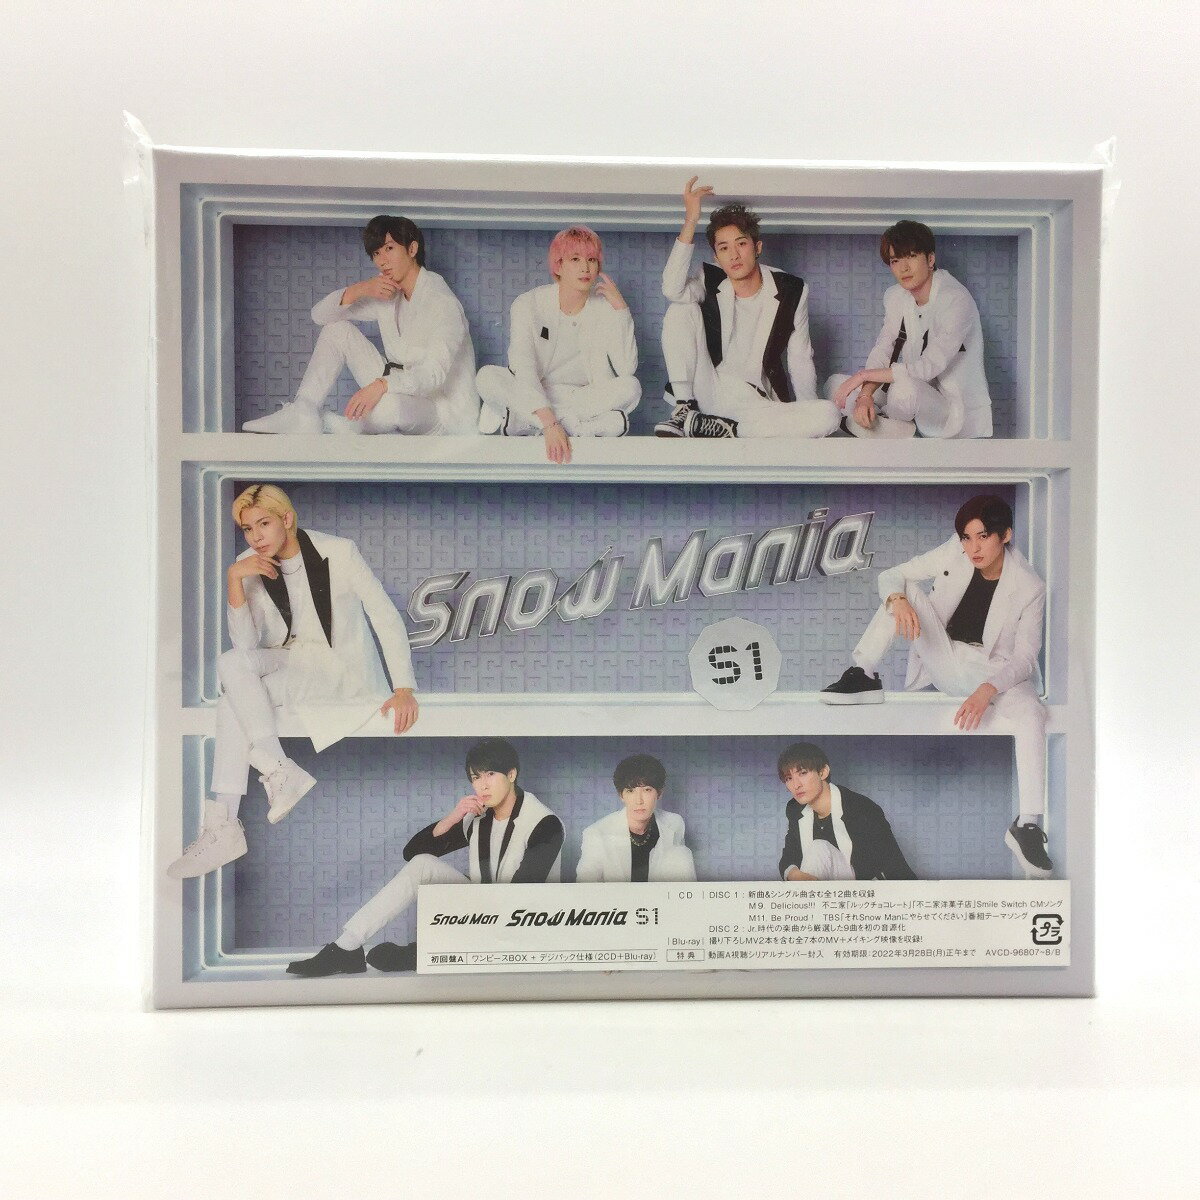 ◎◎【中古】 SnowMan SnowMania S1 初回盤A(2CD+Blu-ray)アルバム 中古品 Bランク